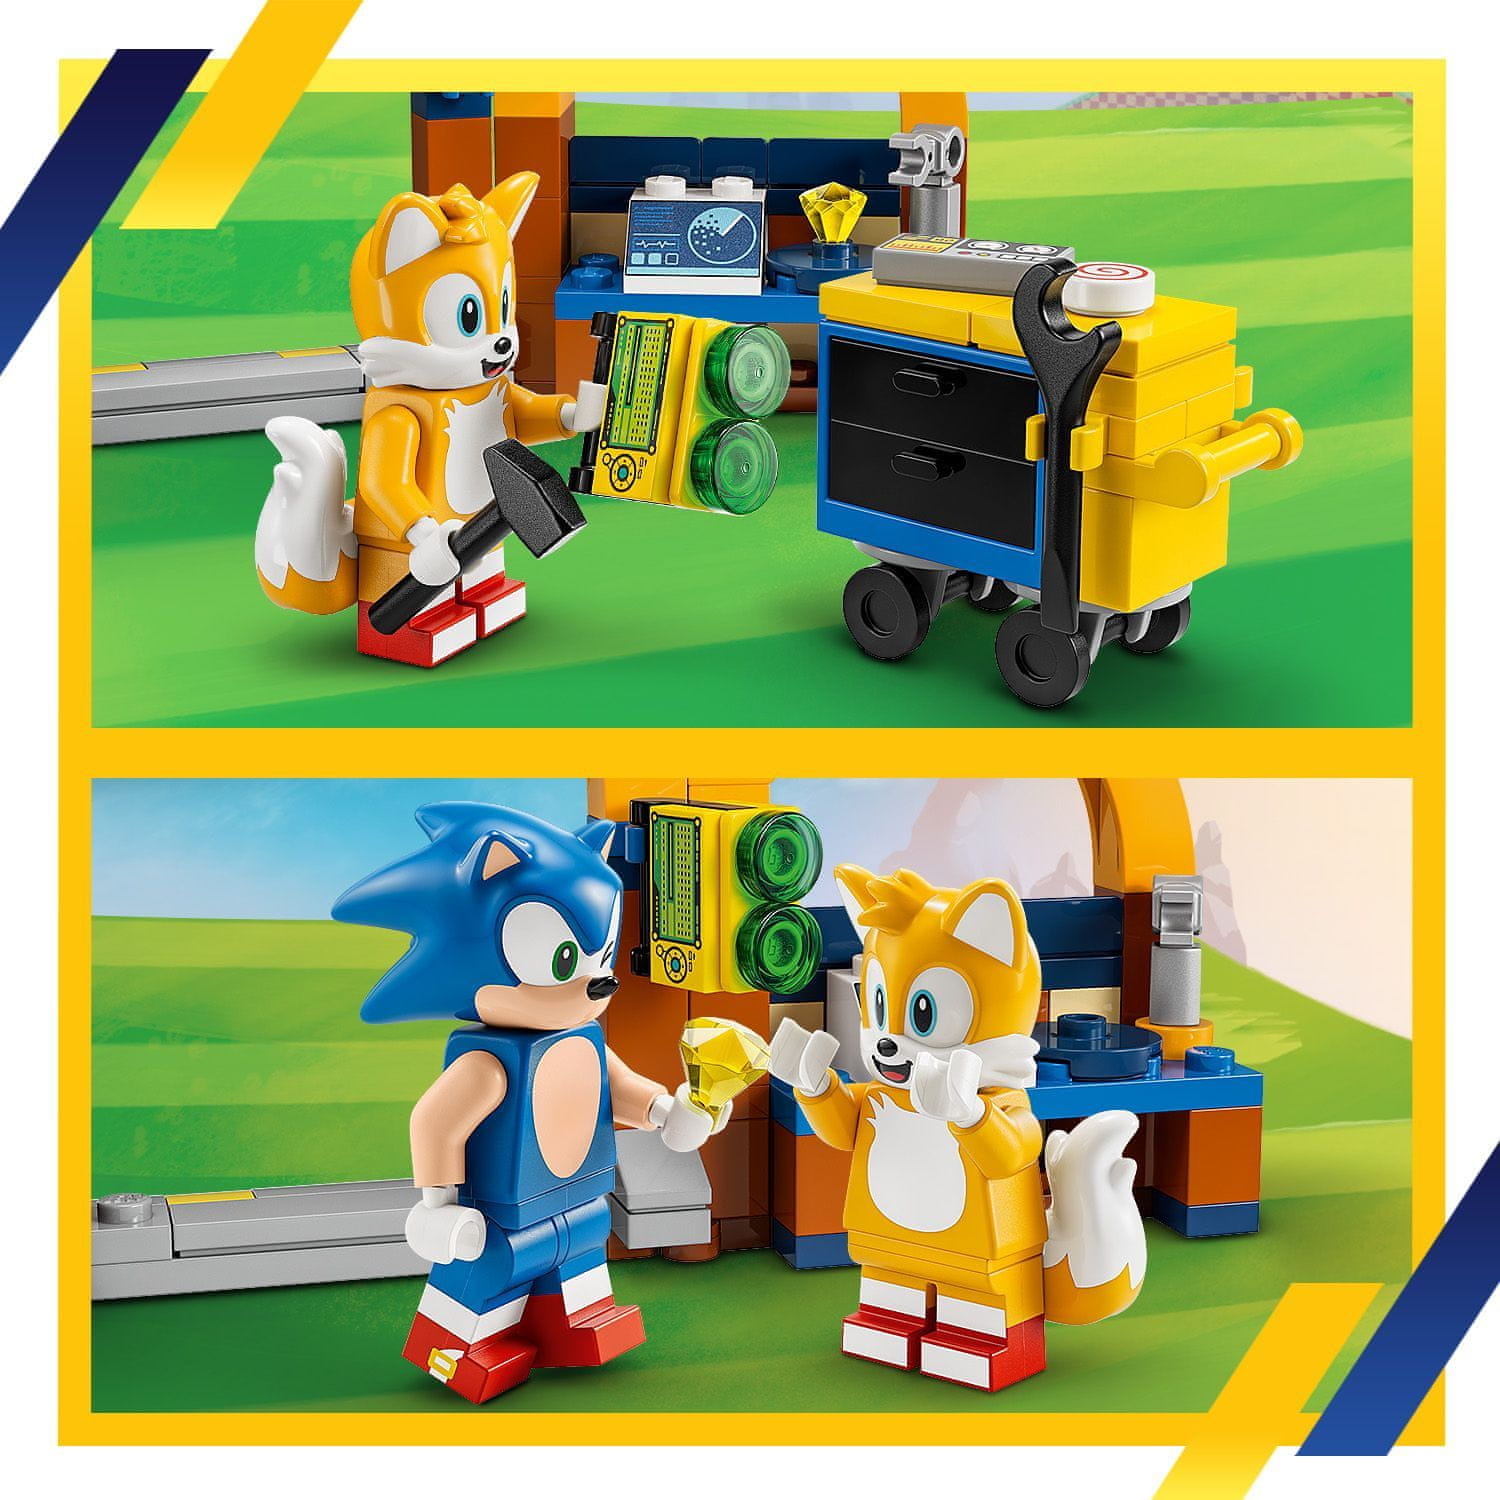 LEGO Sonic The Hedgehog 76991 Tailsova dílna a letadlo Tornádo